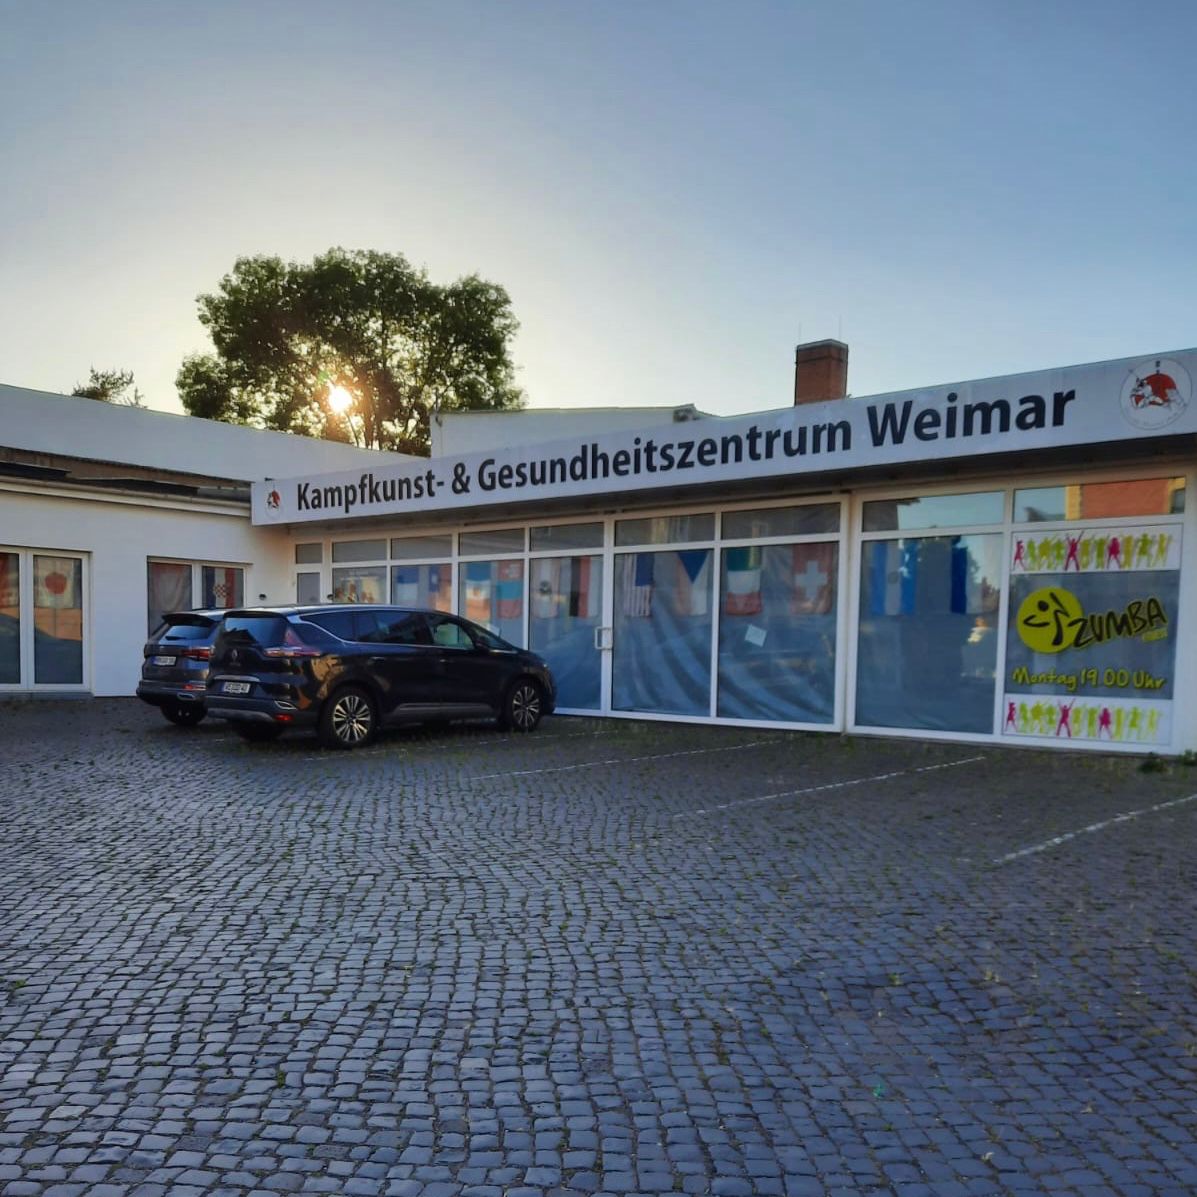 Kampfkunst- & Gesundheitszentrum Weimar